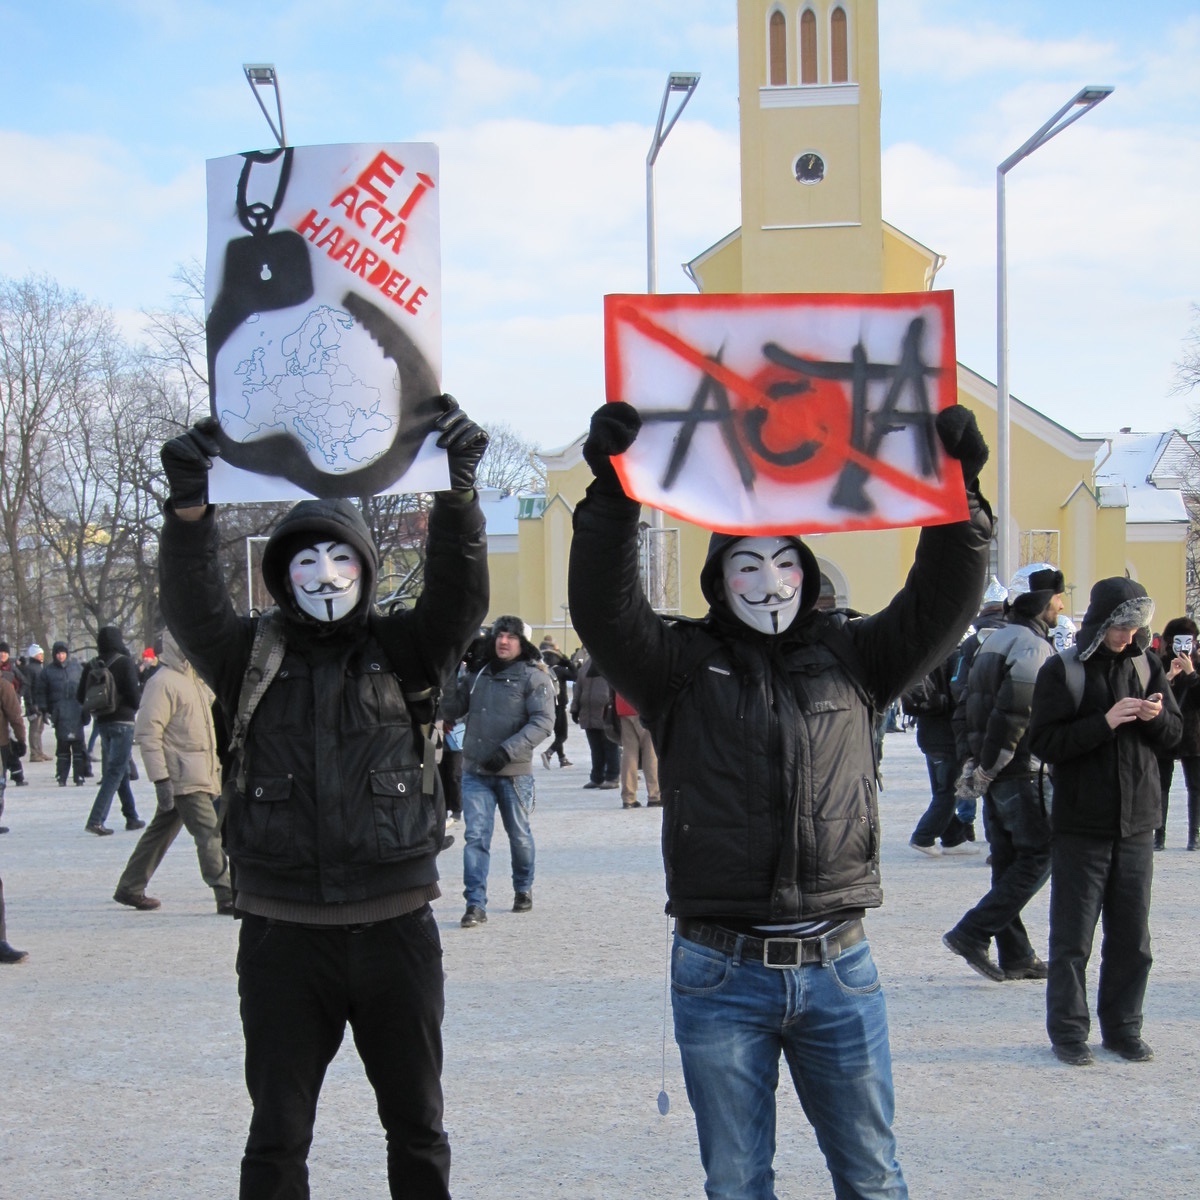 Foto: Zwei Anti-ACTA-Demonstranten mit Guy Fawkes-Masken und hochgehaltenen Transparenten